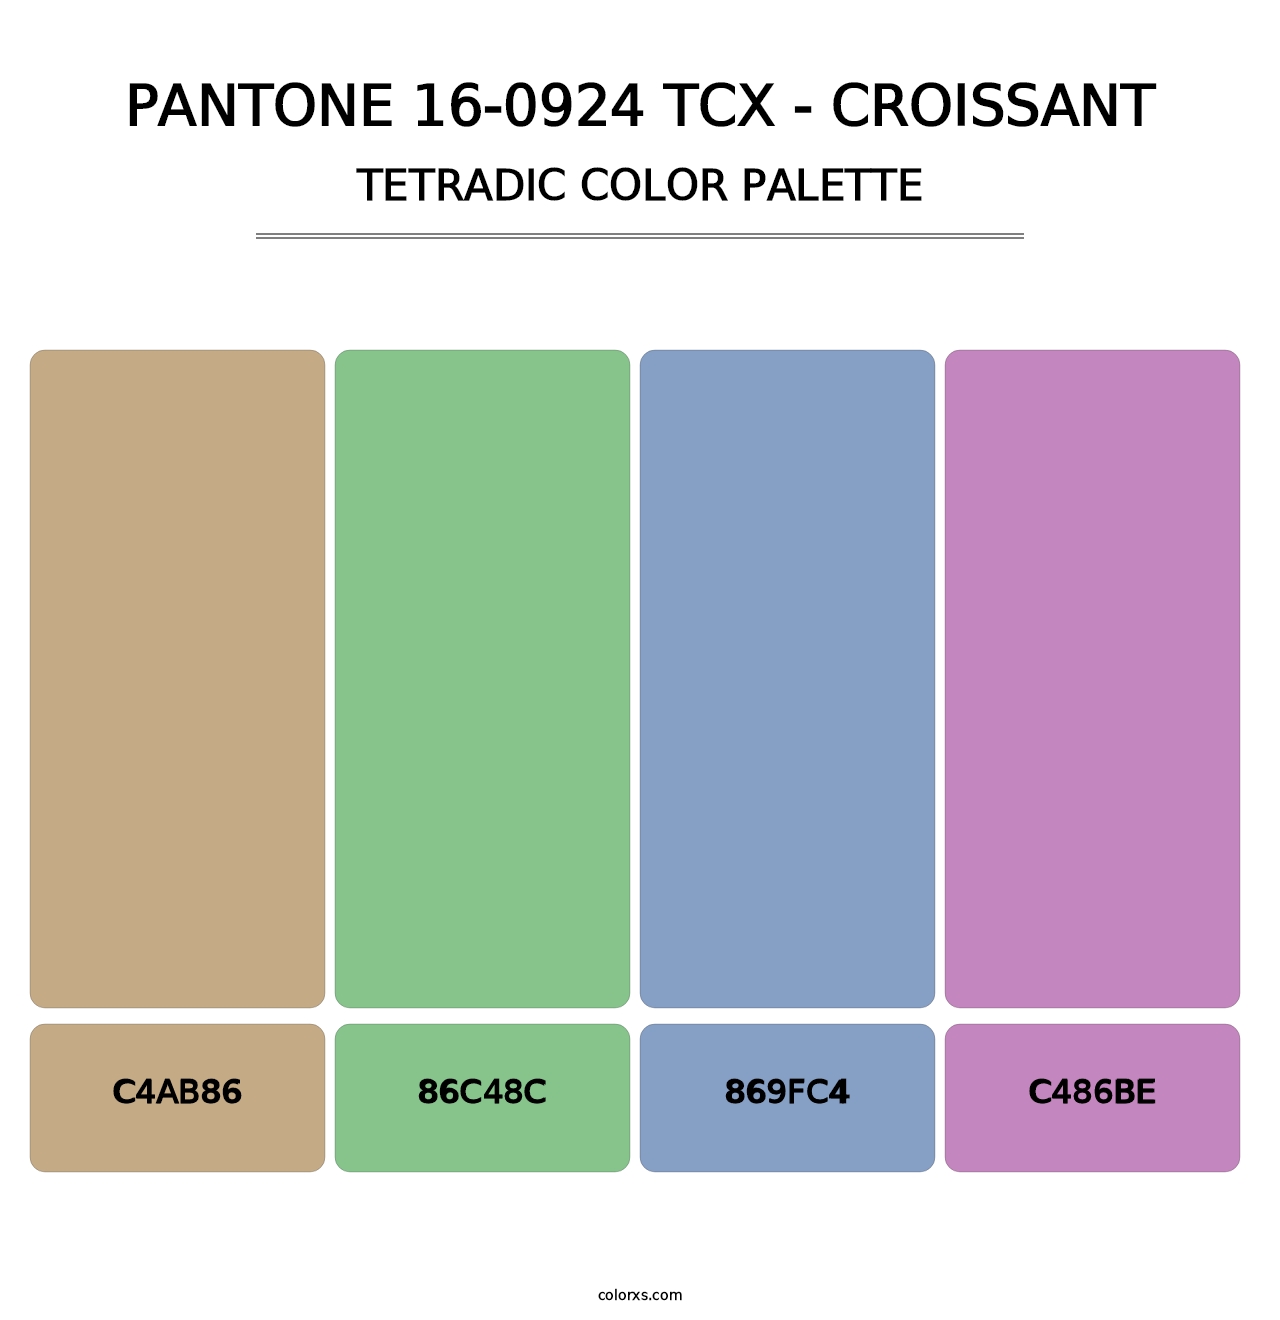 PANTONE 16-0924 TCX - Croissant - Tetradic Color Palette